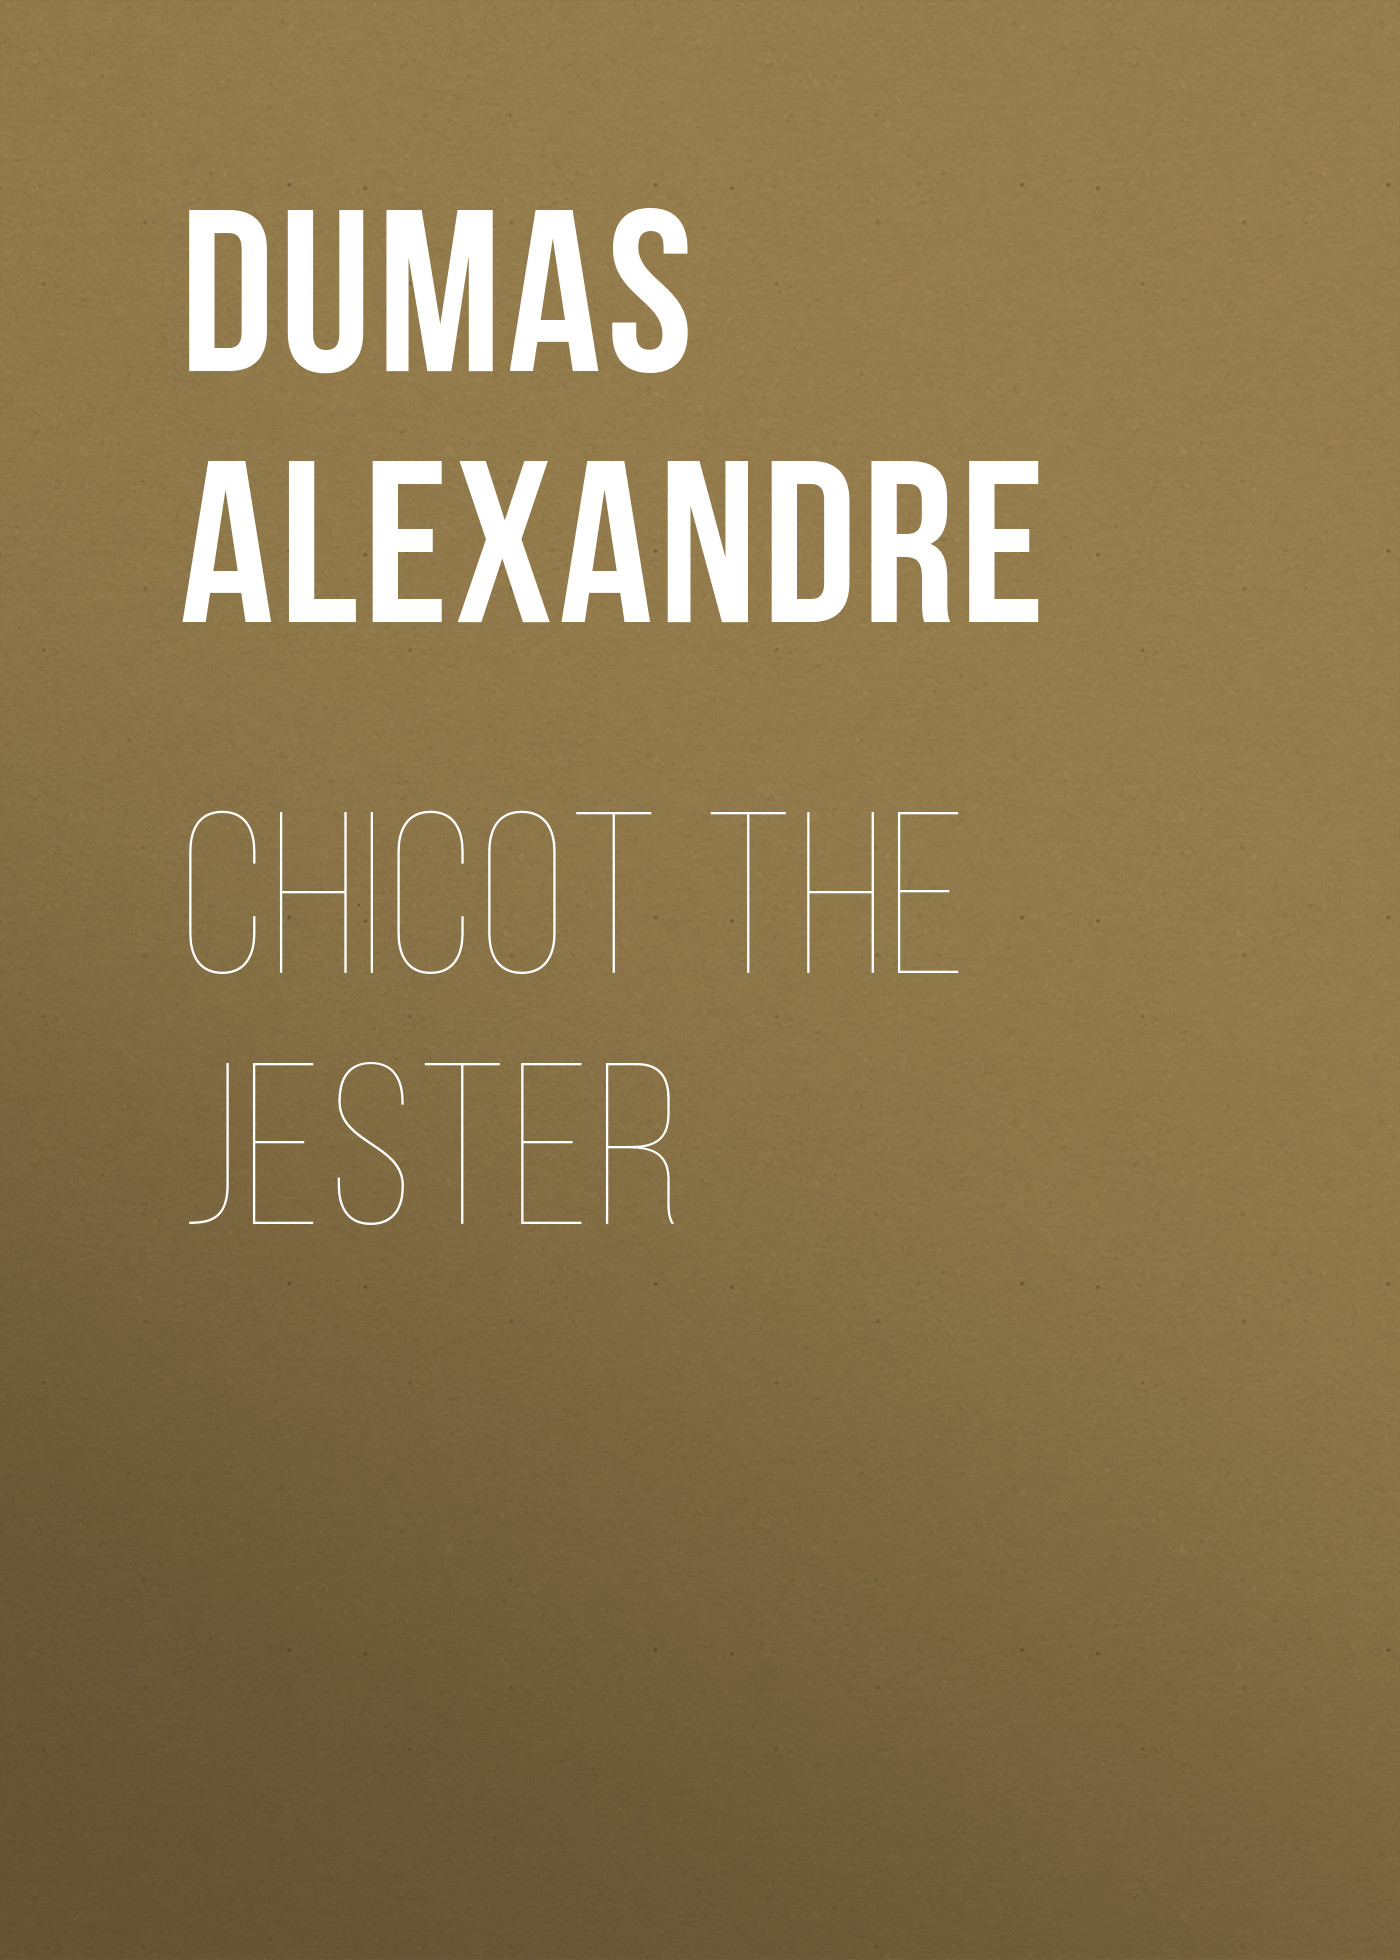 Книга Chicot the Jester из серии , созданная Alexandre Dumas, может относится к жанру Литература 19 века, Зарубежная старинная литература, Зарубежная классика. Стоимость электронной книги Chicot the Jester с идентификатором 25202423 составляет 0 руб.